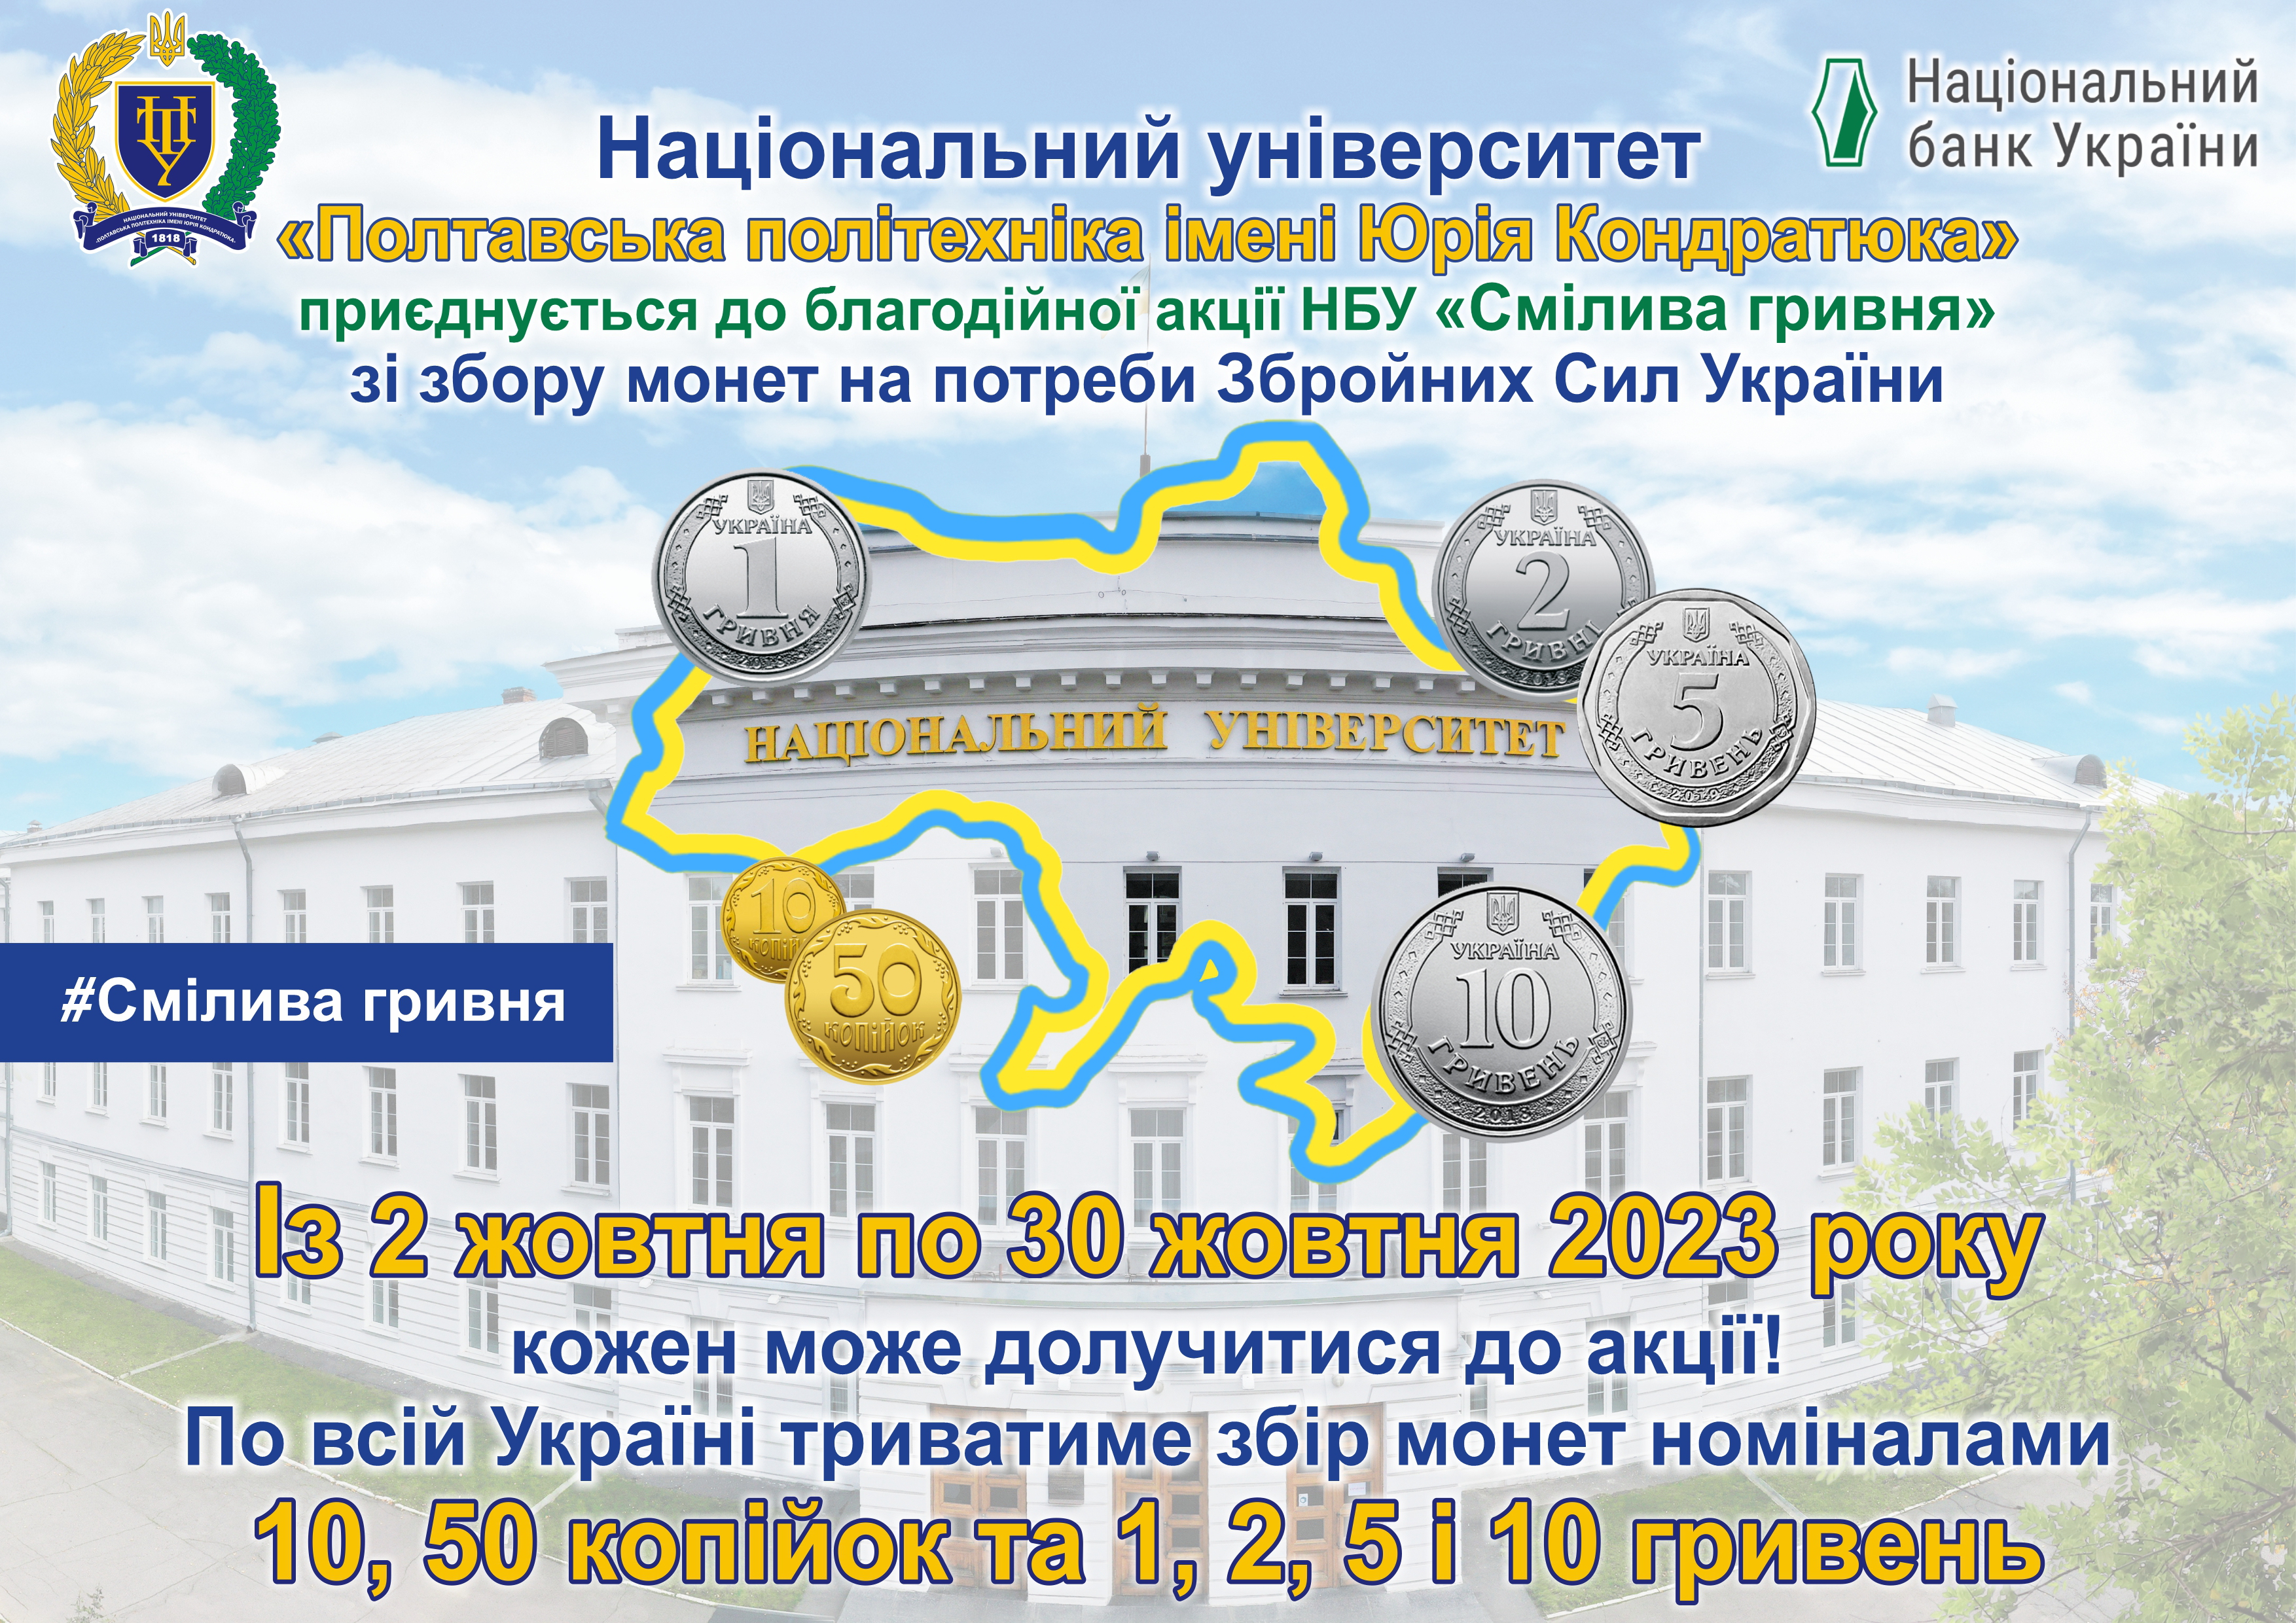 «Смілива гривня»: політехніка вдруге візьме участь у благодійній акції Національного банку України